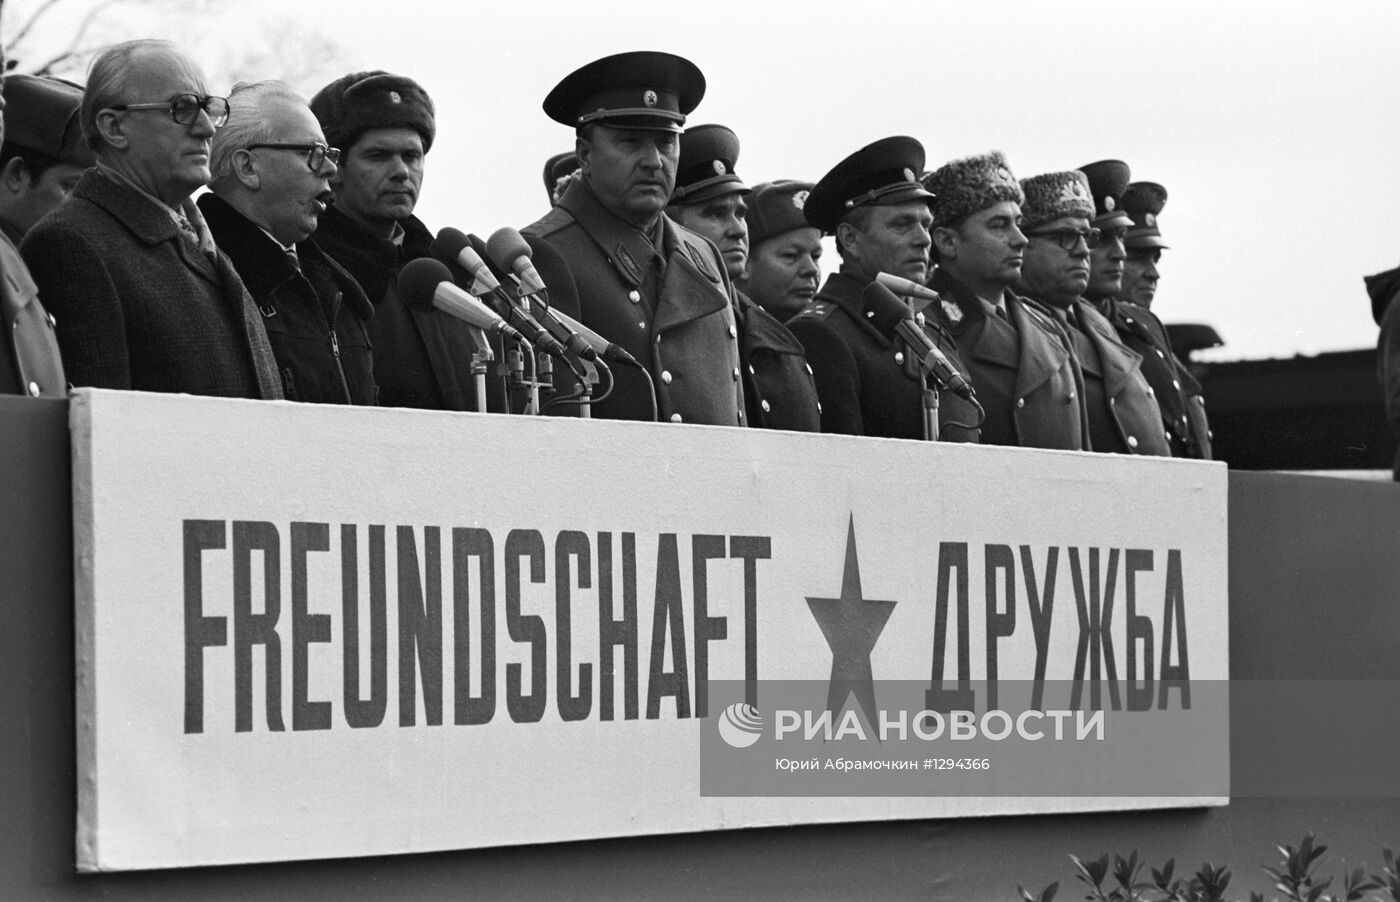 Вывод советских войск из Германии